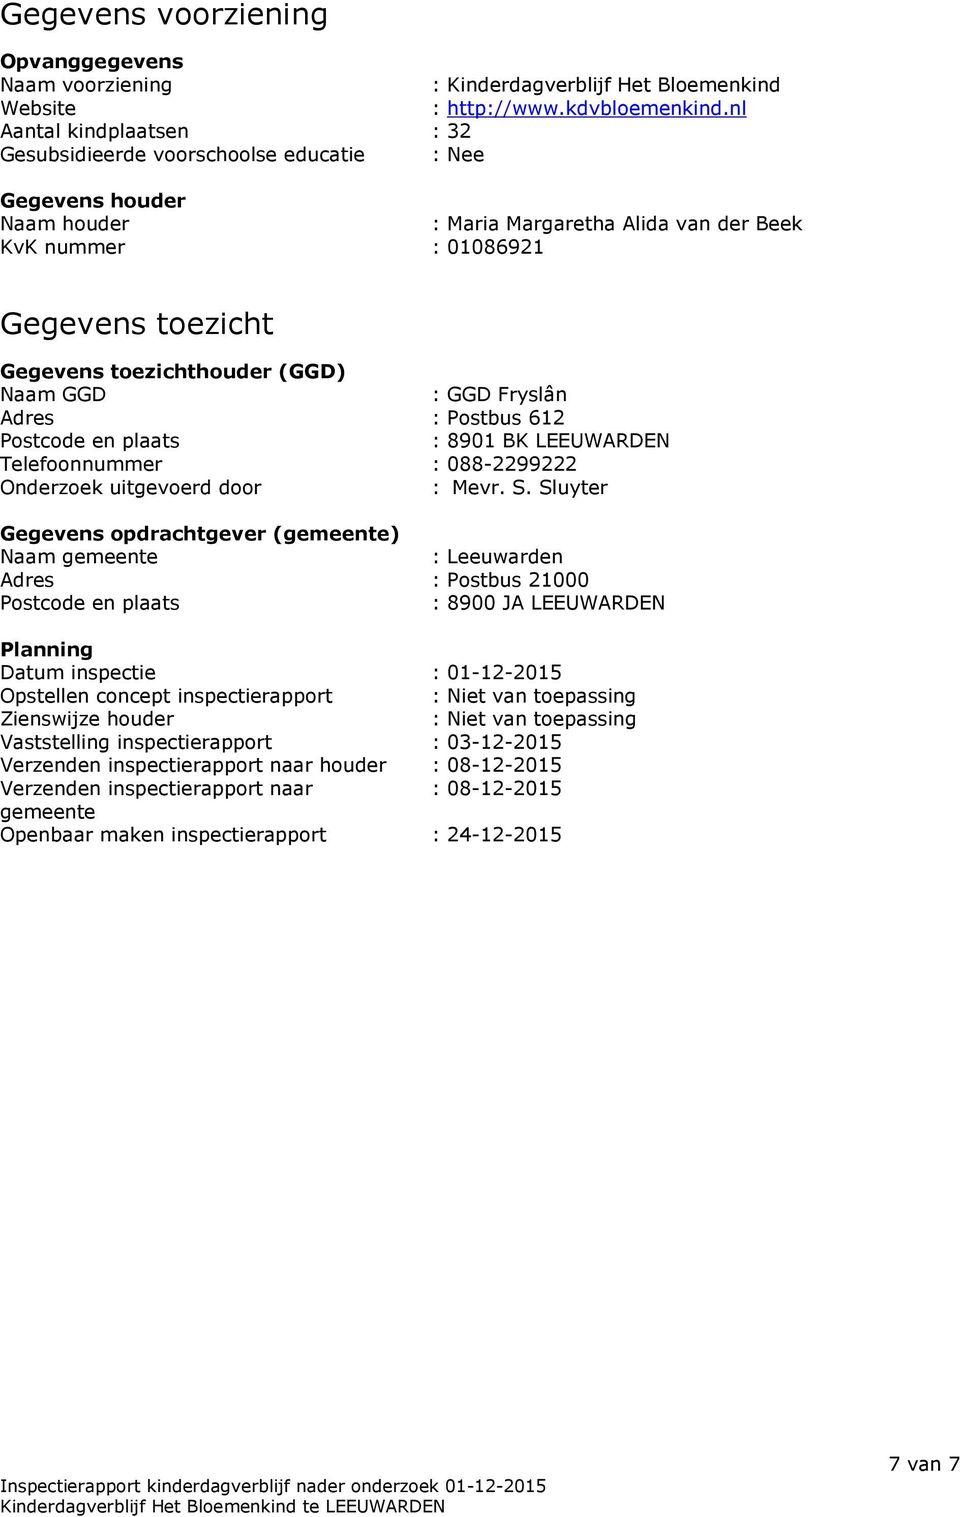 toezichthouder (GGD) Naam GGD : GGD Fryslân Adres : Postbus 612 Postcode en plaats : 8901 BK LEEUWARDEN Telefoonnummer : 088-2299222 Onderzoek uitgevoerd door : Mevr. S.